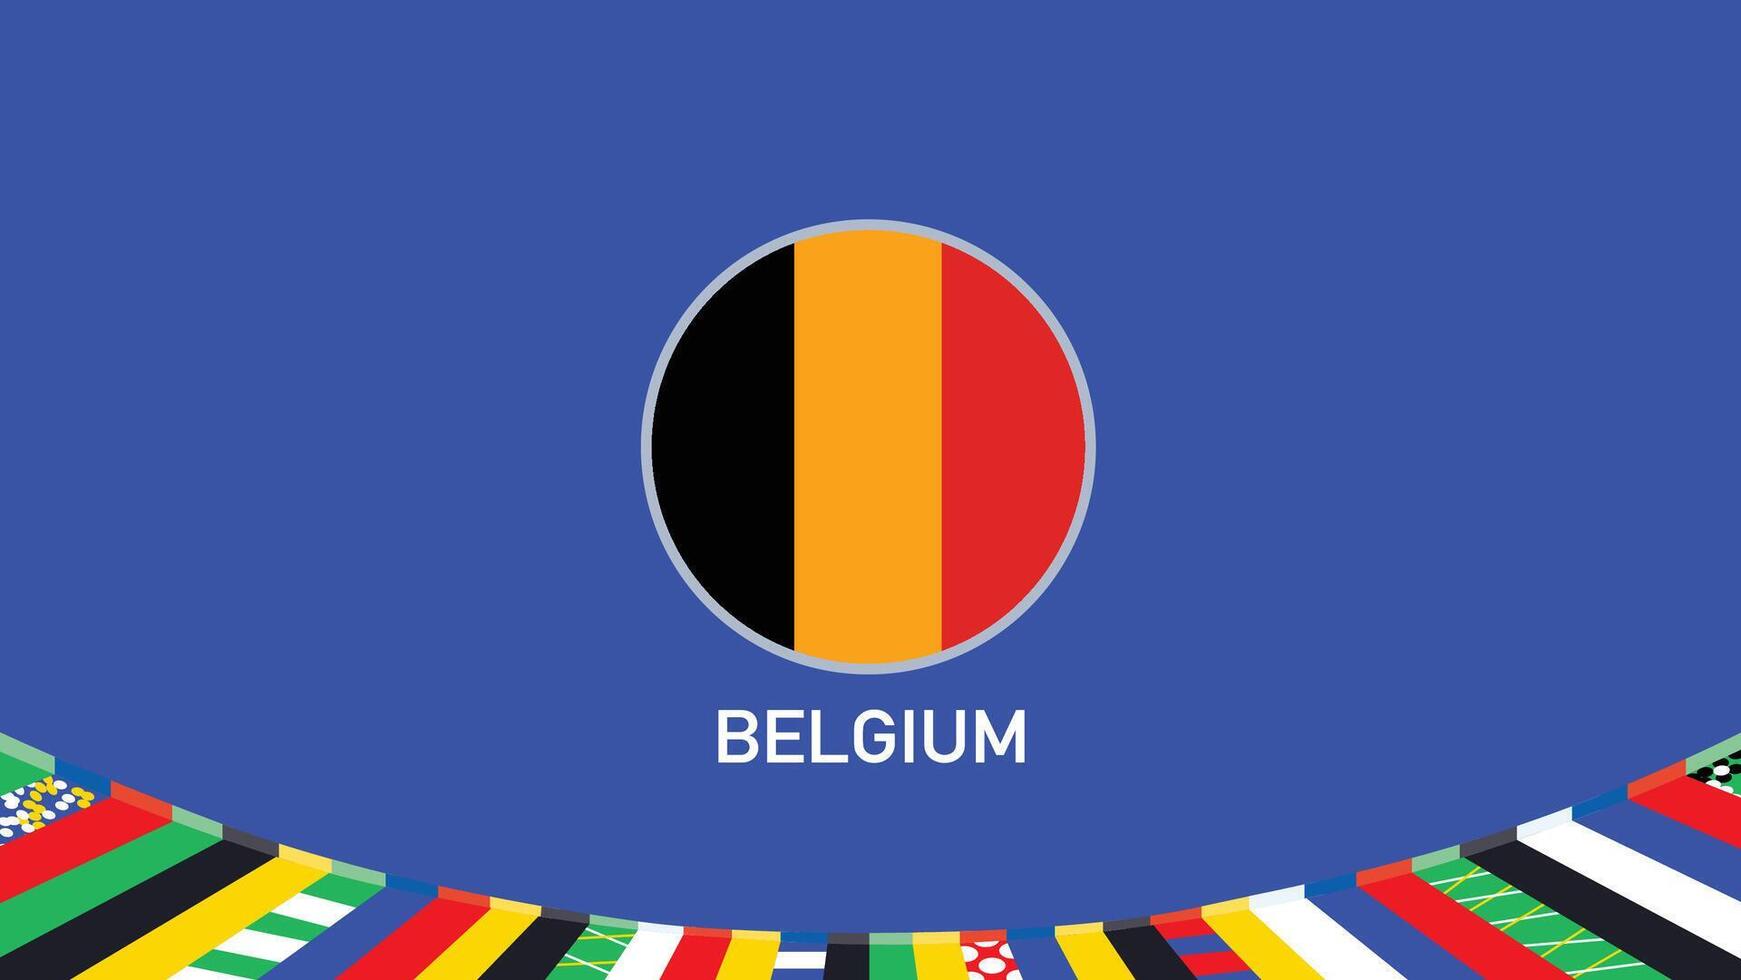 Bélgica emblema bandera equipos europeo naciones 2024 resumen países europeo Alemania fútbol americano símbolo logo diseño ilustración vector